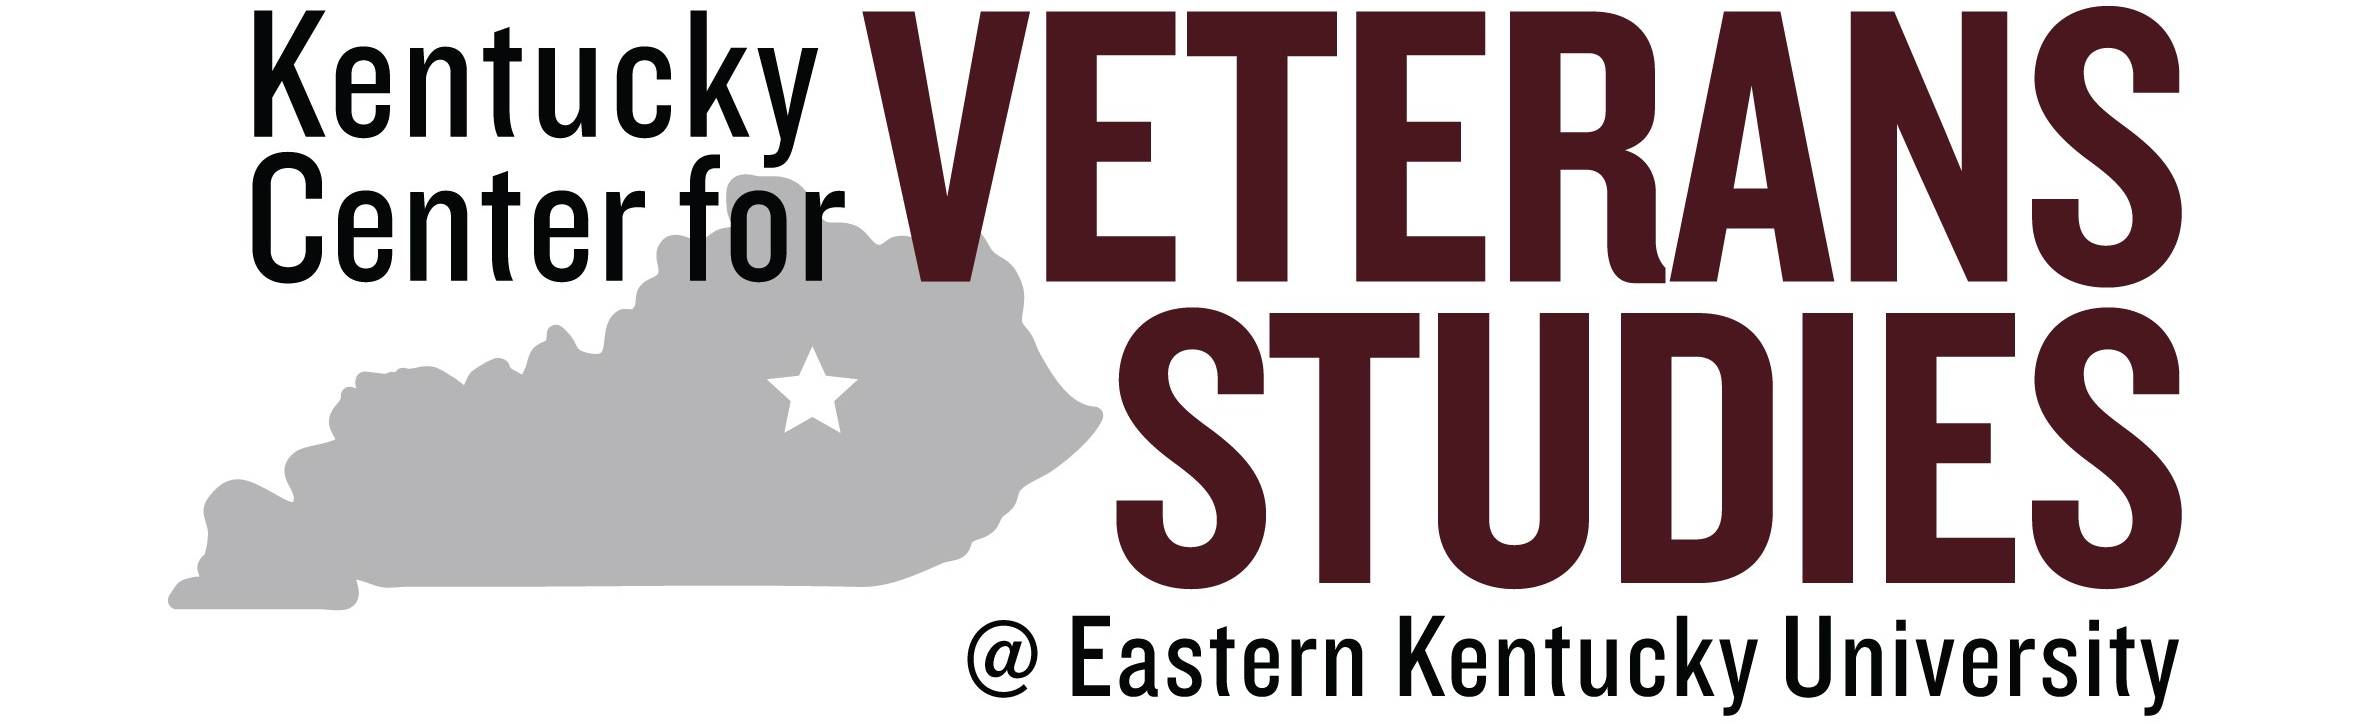 Kentucky Center for Veterans Studies at EKU logo